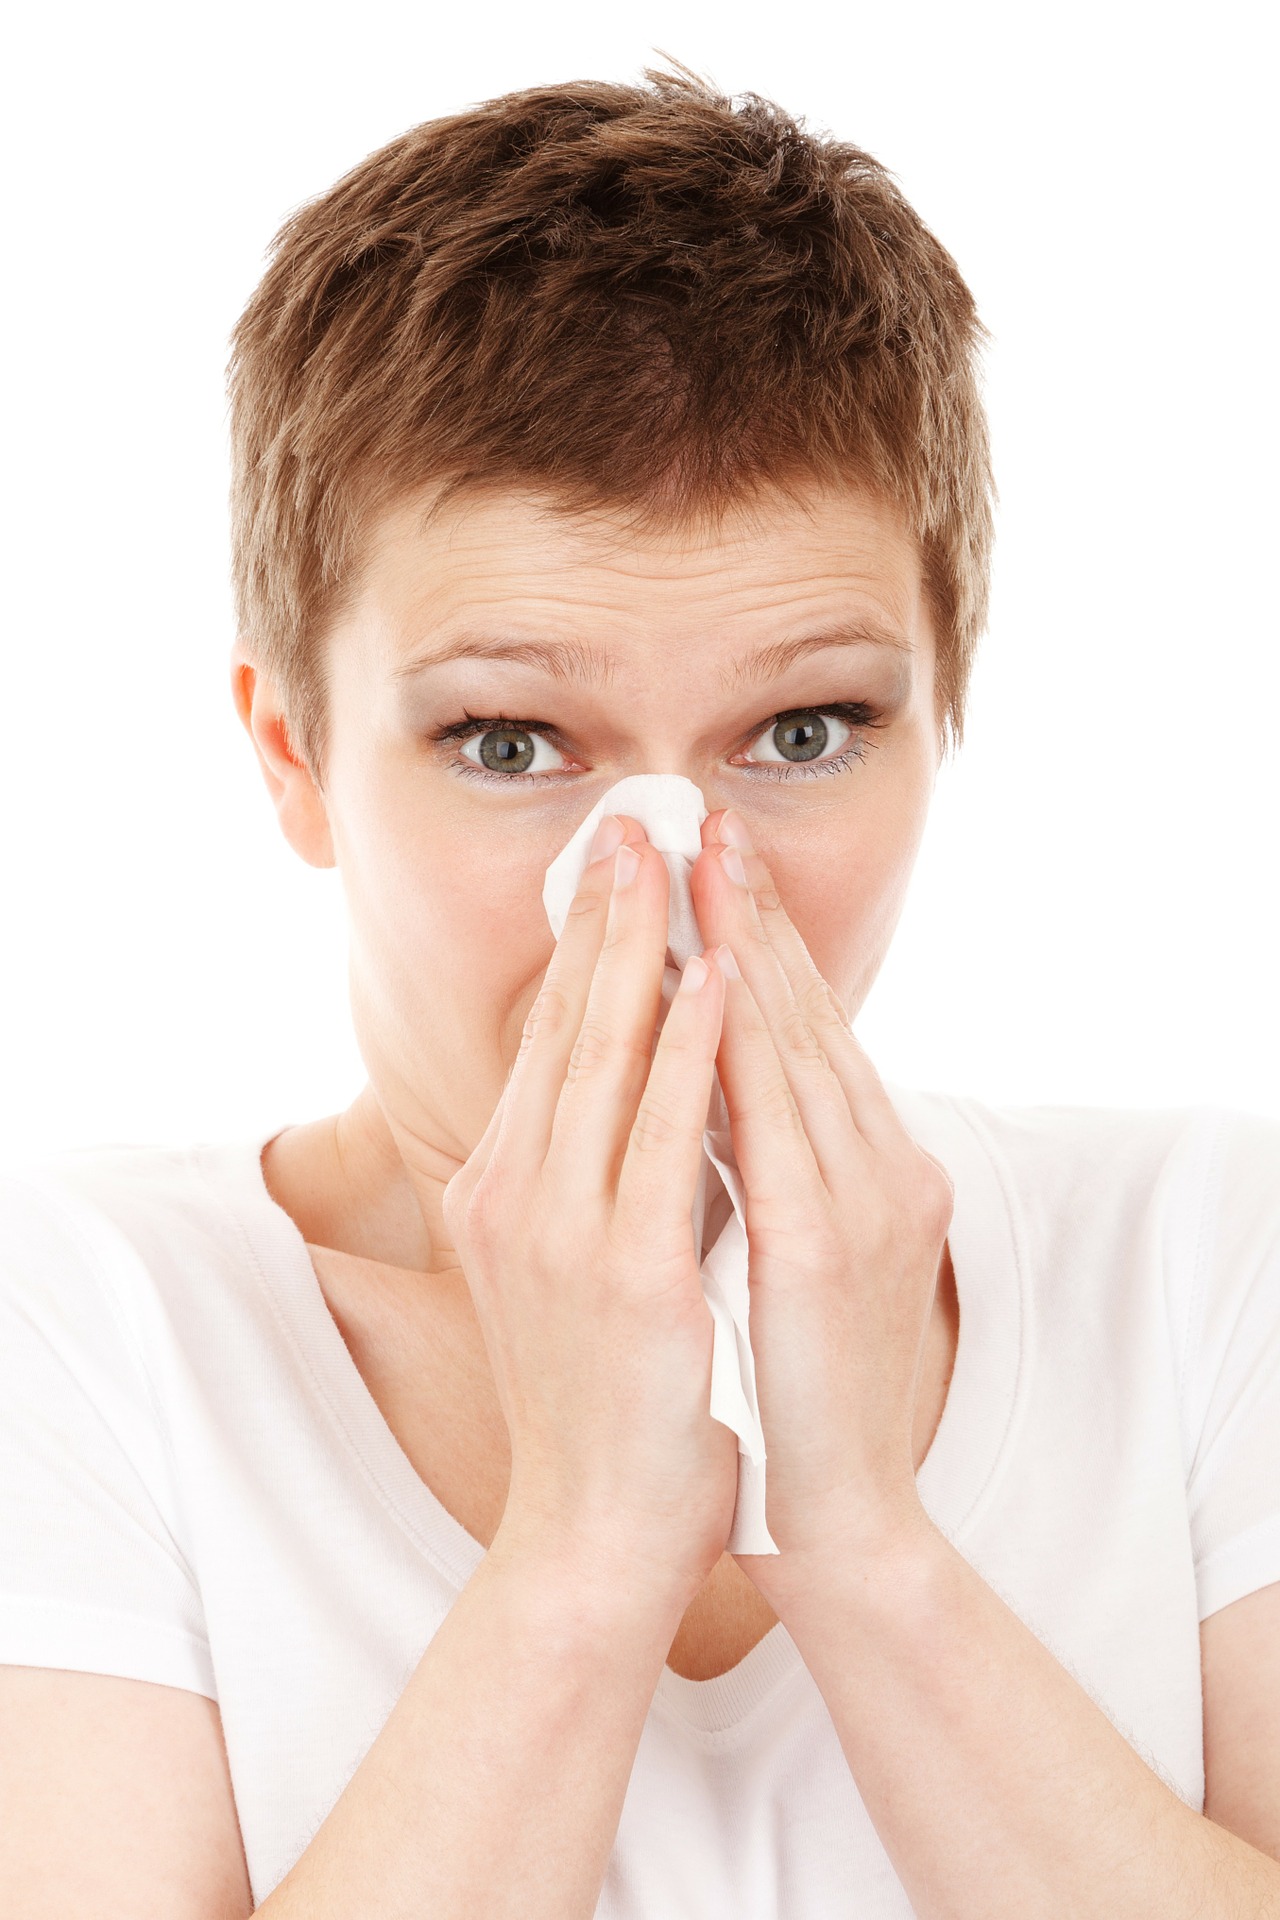 La congestion nasale ou nez bouché chronique | Dr Yves-Victor Kamami